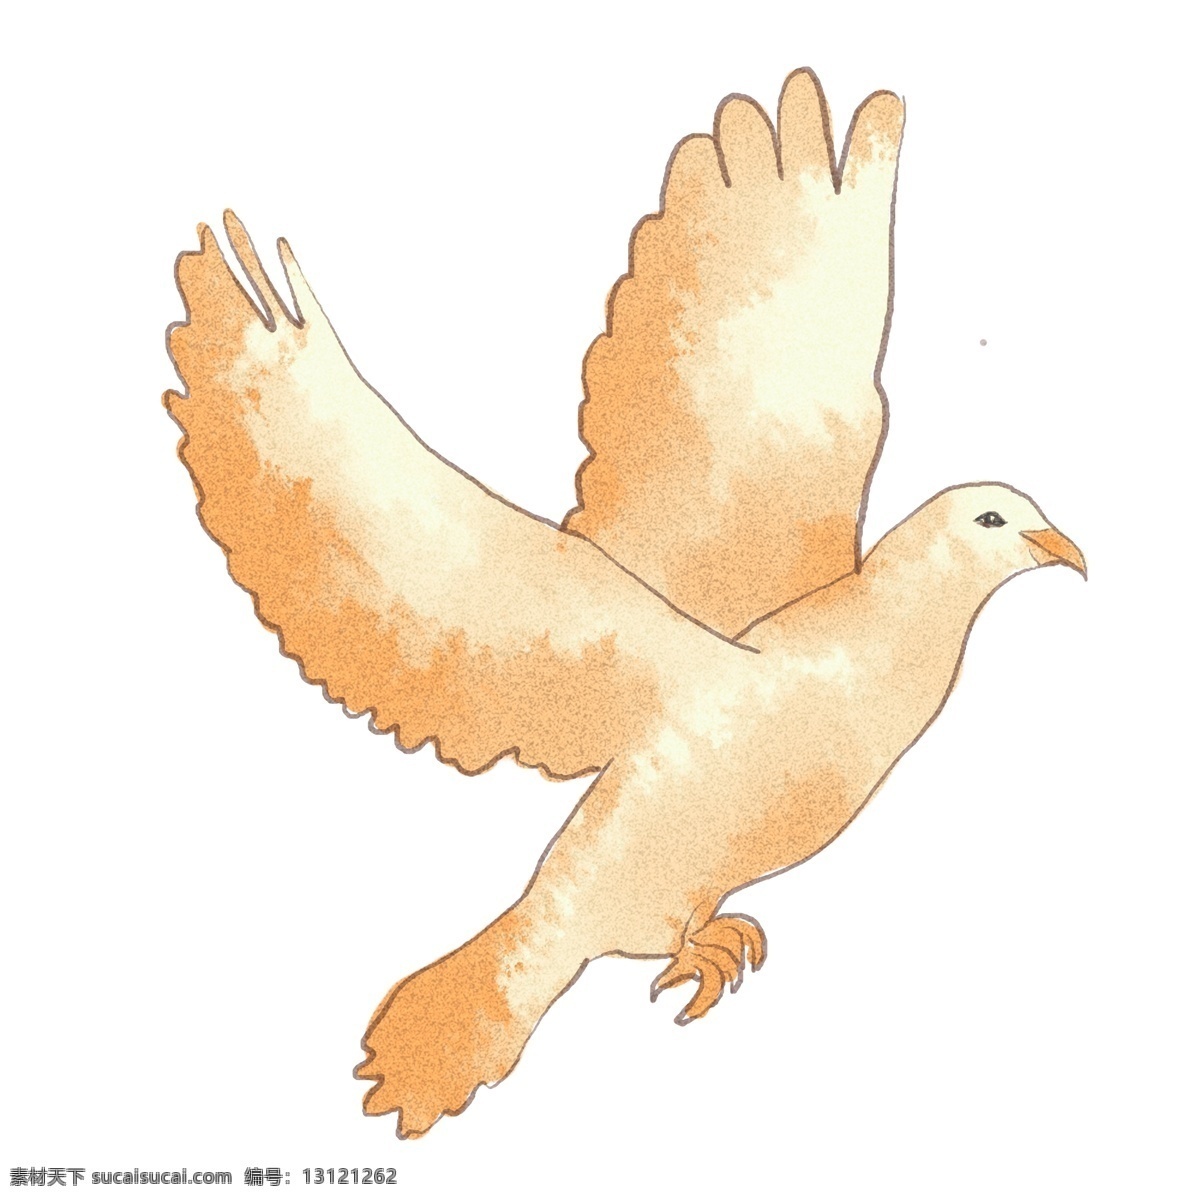 国际 平日 鸽子 原创 商用 元素 动物 和平 鸟 可爱 水彩 手绘 板绘 世界和平日